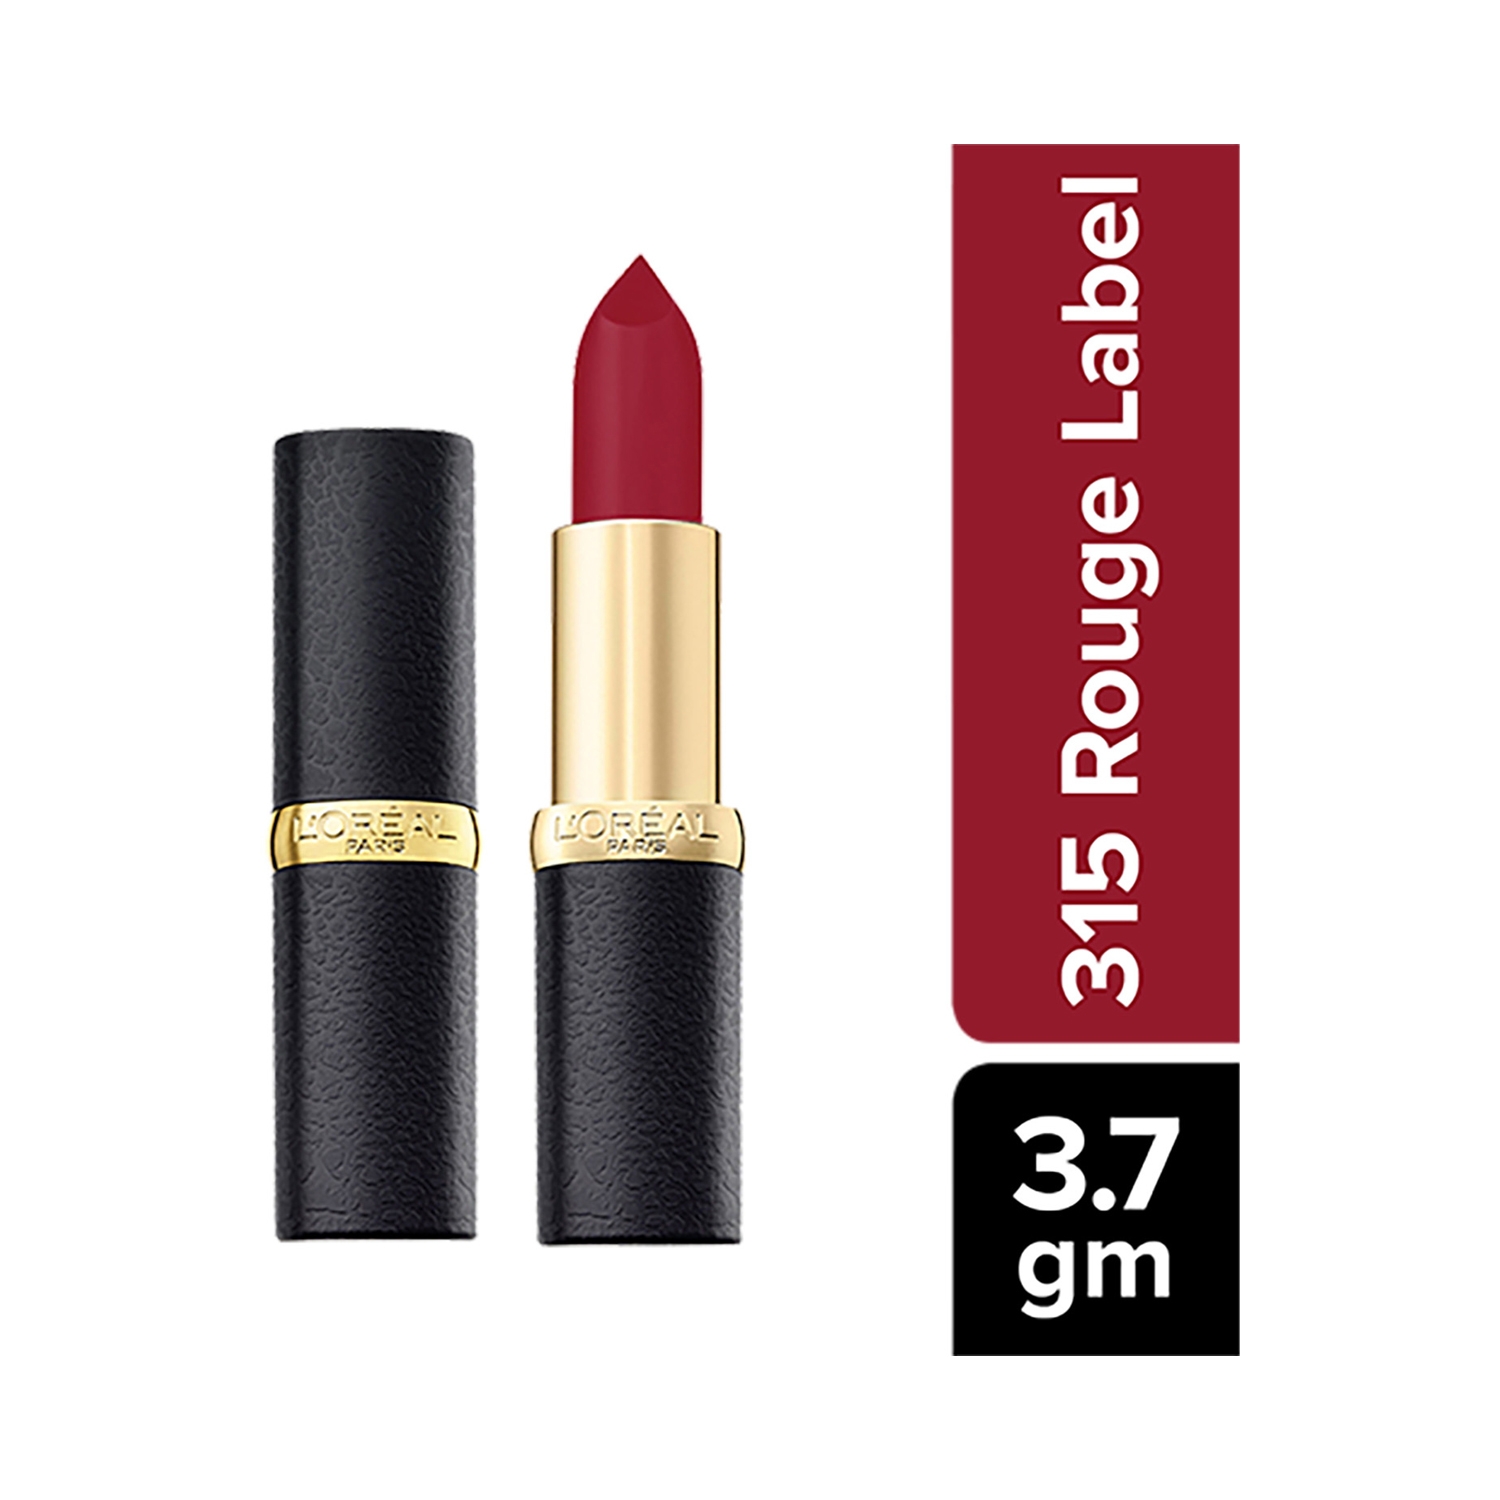 L'Oreal Paris | L'Oreal Paris Color Riche Moist Matte Lipstick - 315 Rouge Label (3.7g)